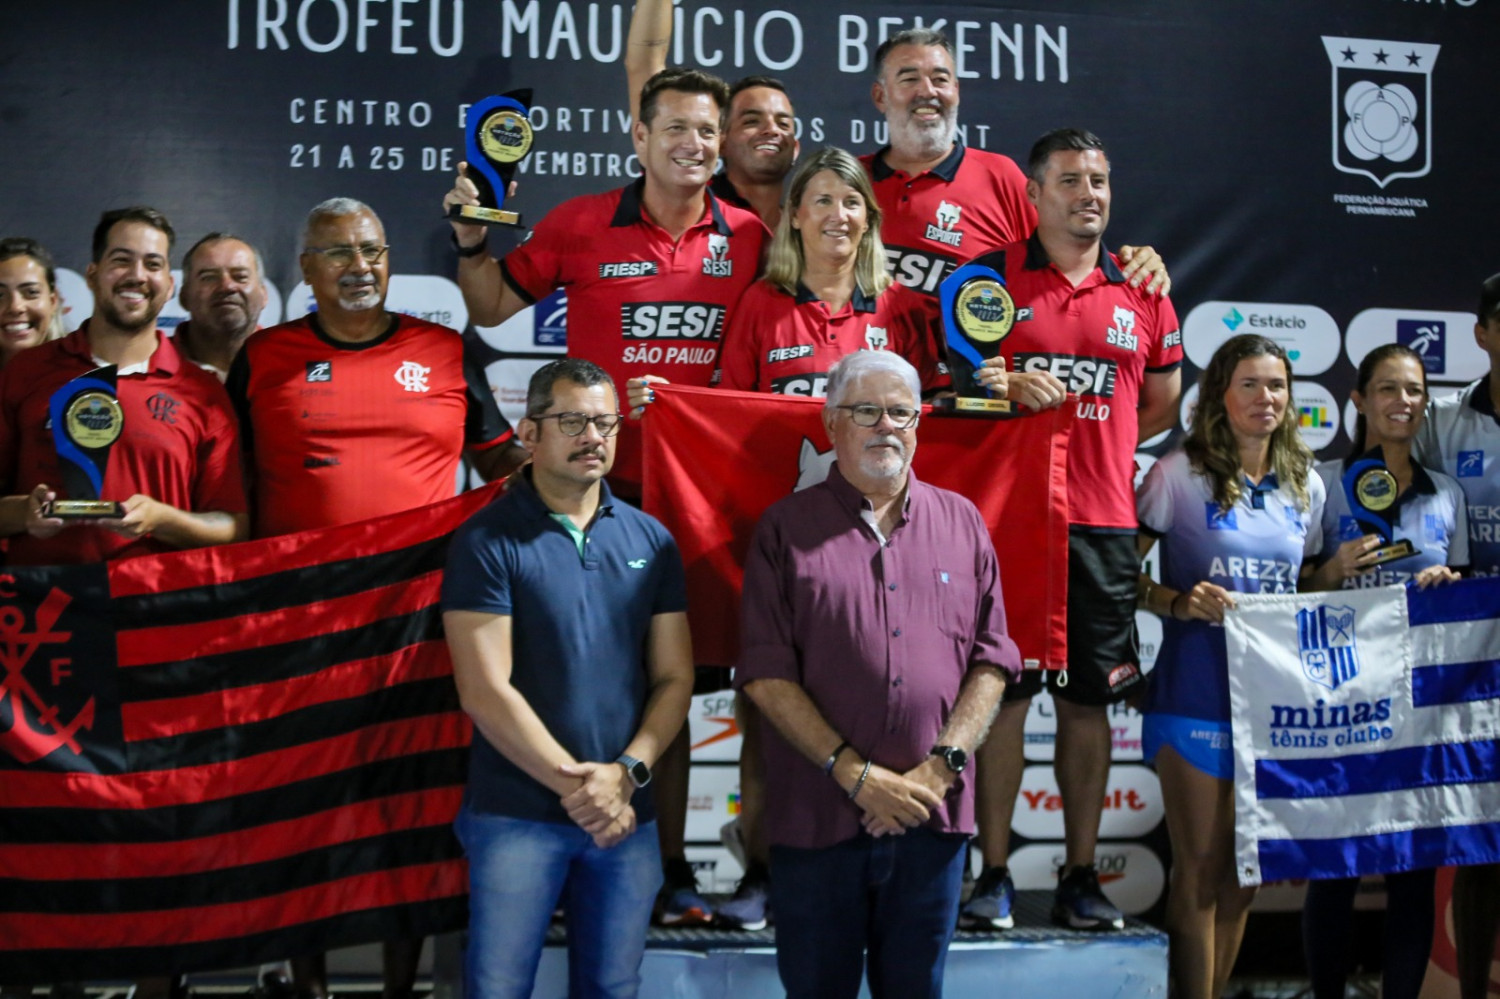 SESI-SP é campeão do Troféu Maurício Bekenn 2023